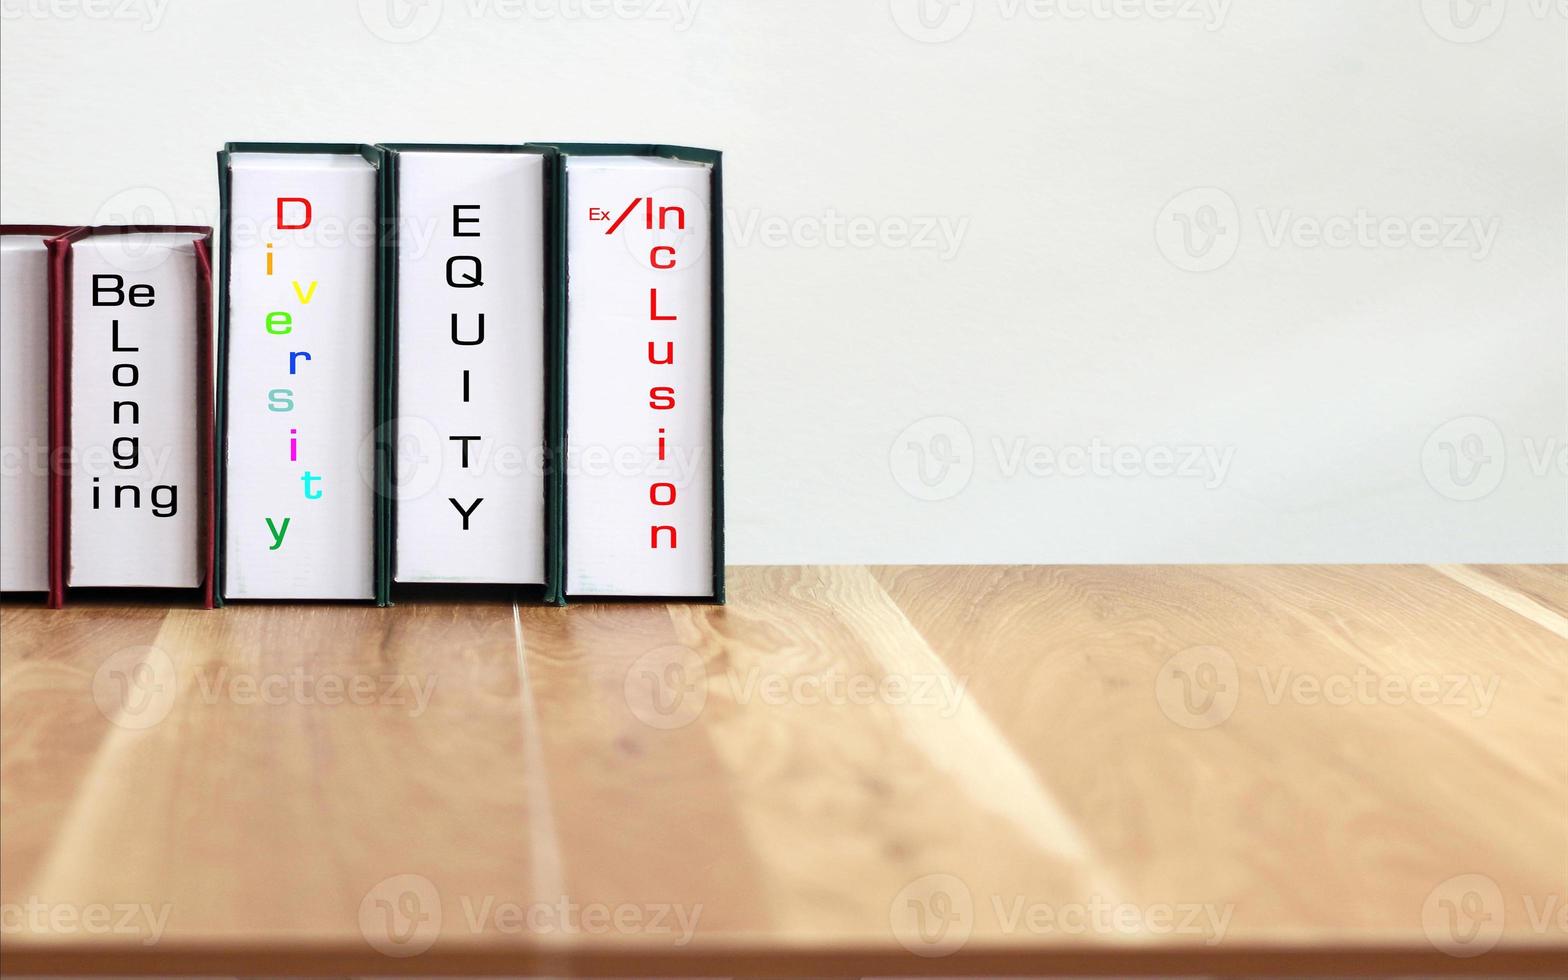 livros com palavras dei, diversidade, equidade, inclusão na mesa de madeira com fundo branco. foto